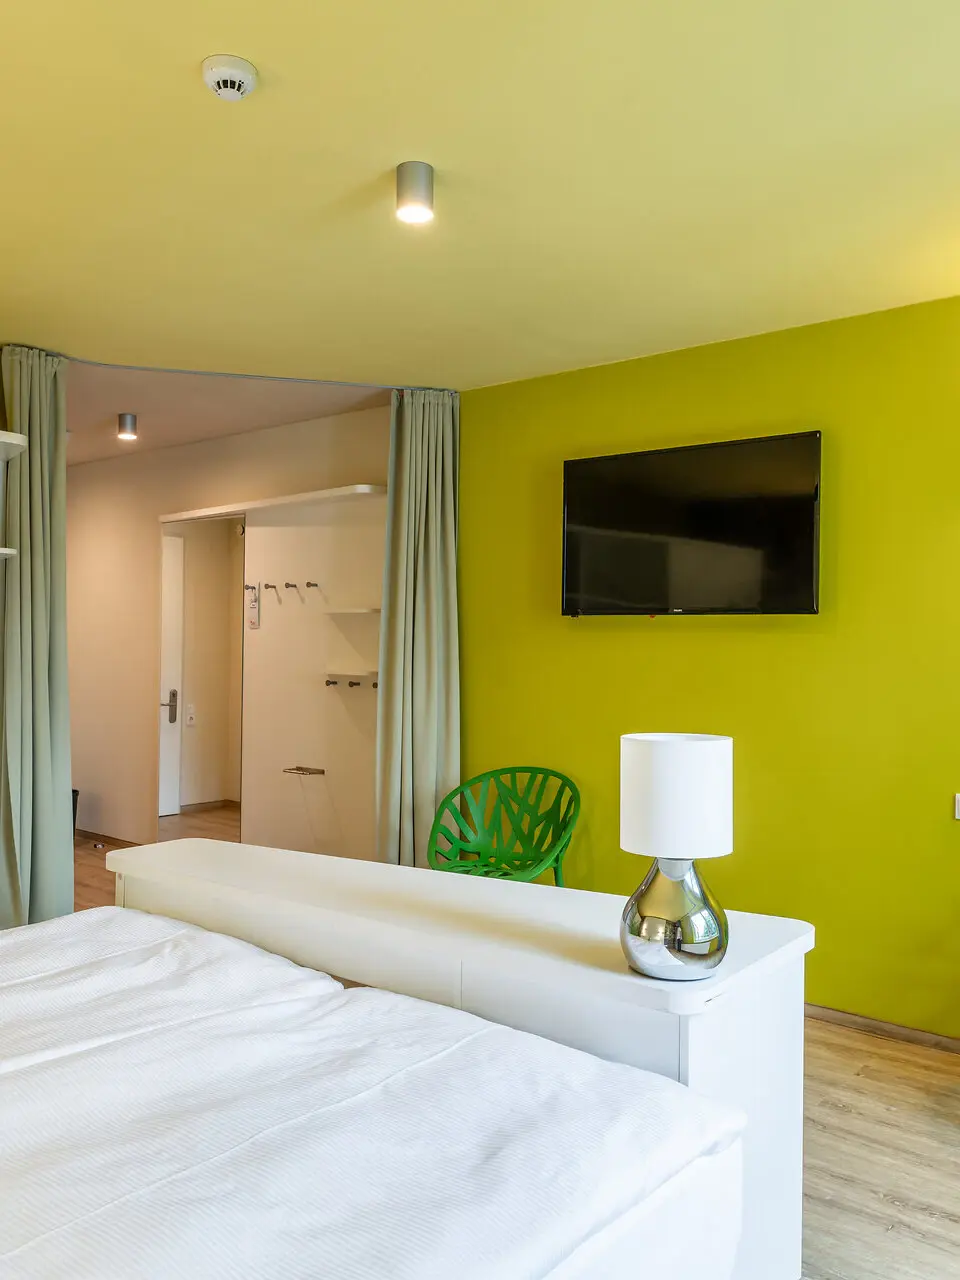 Ein Schlafzimmer mit grünen Wänden, einem Bett und moderner Einrichtung.